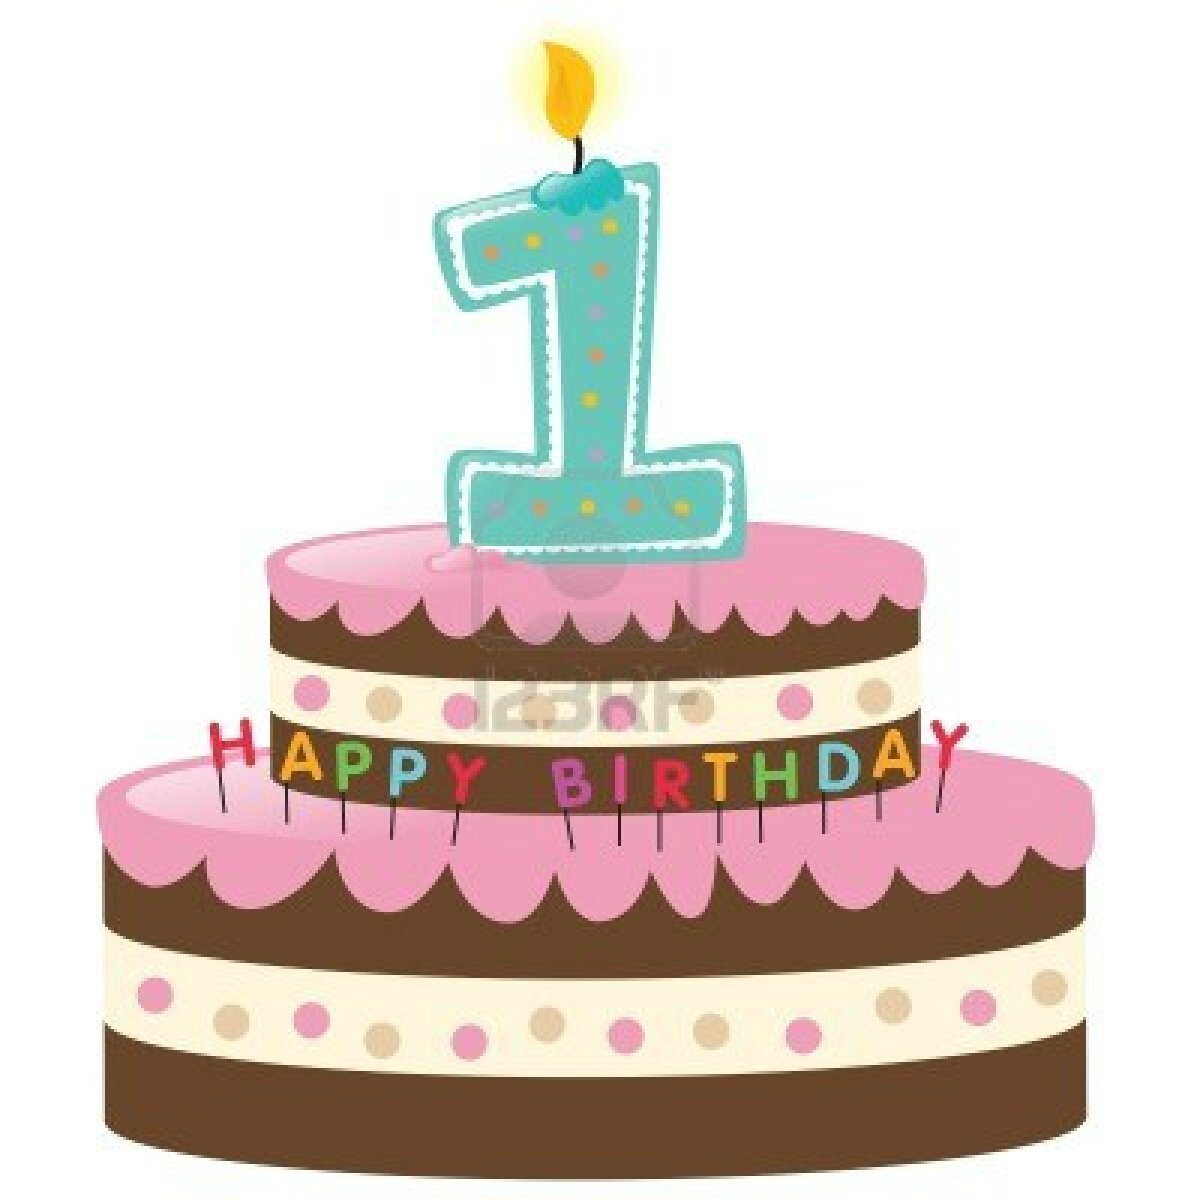 clipart tort urodzinowy - photo #48